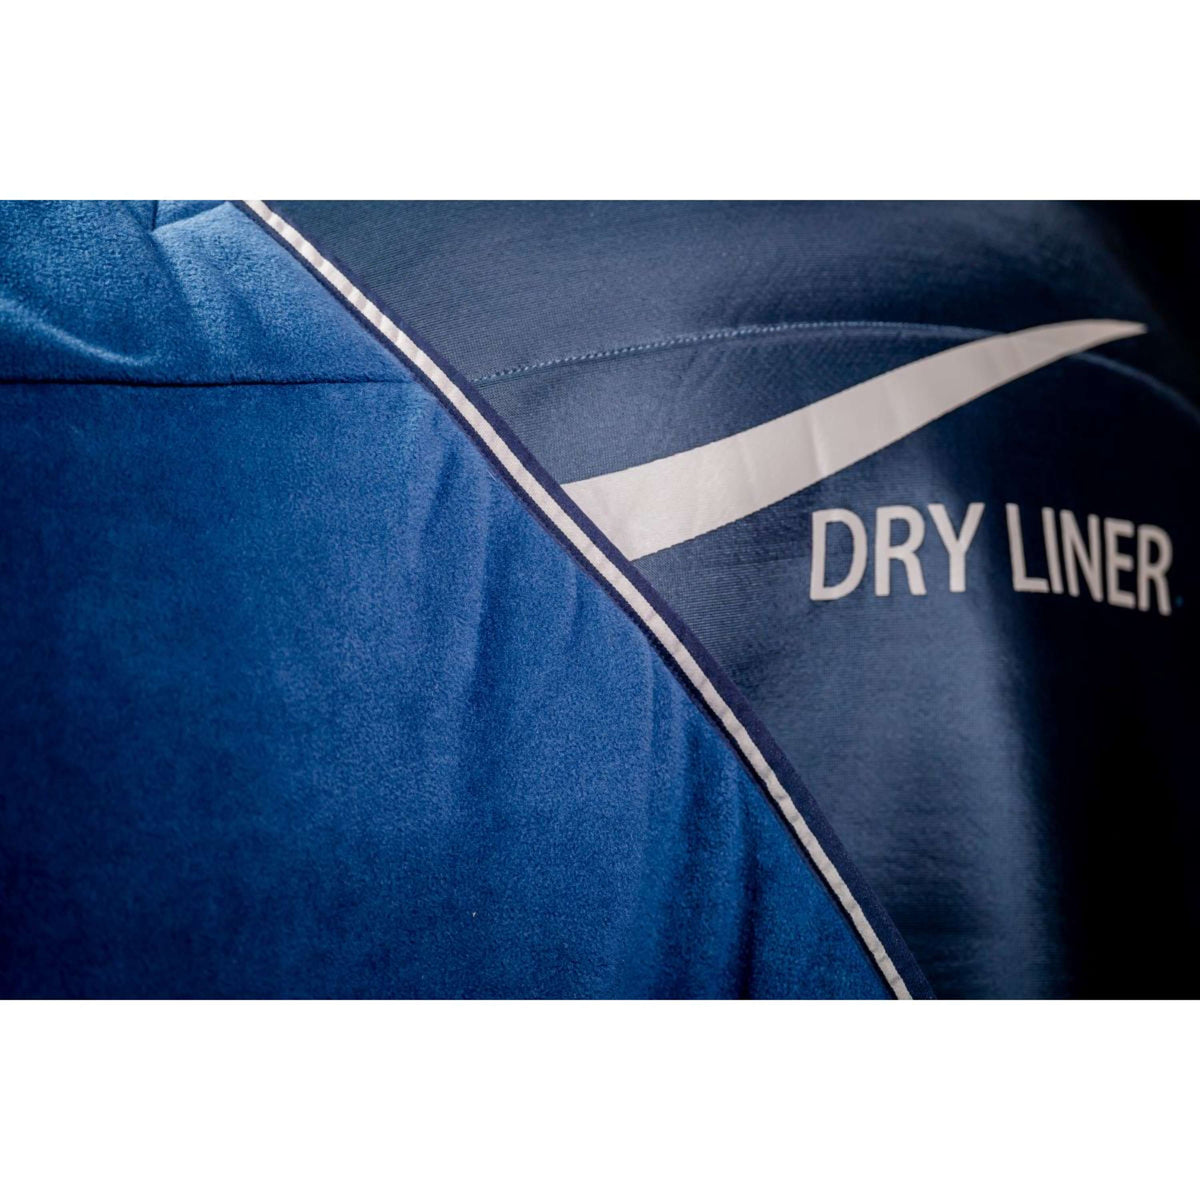 Horseware Dry Liner Navy/Silber